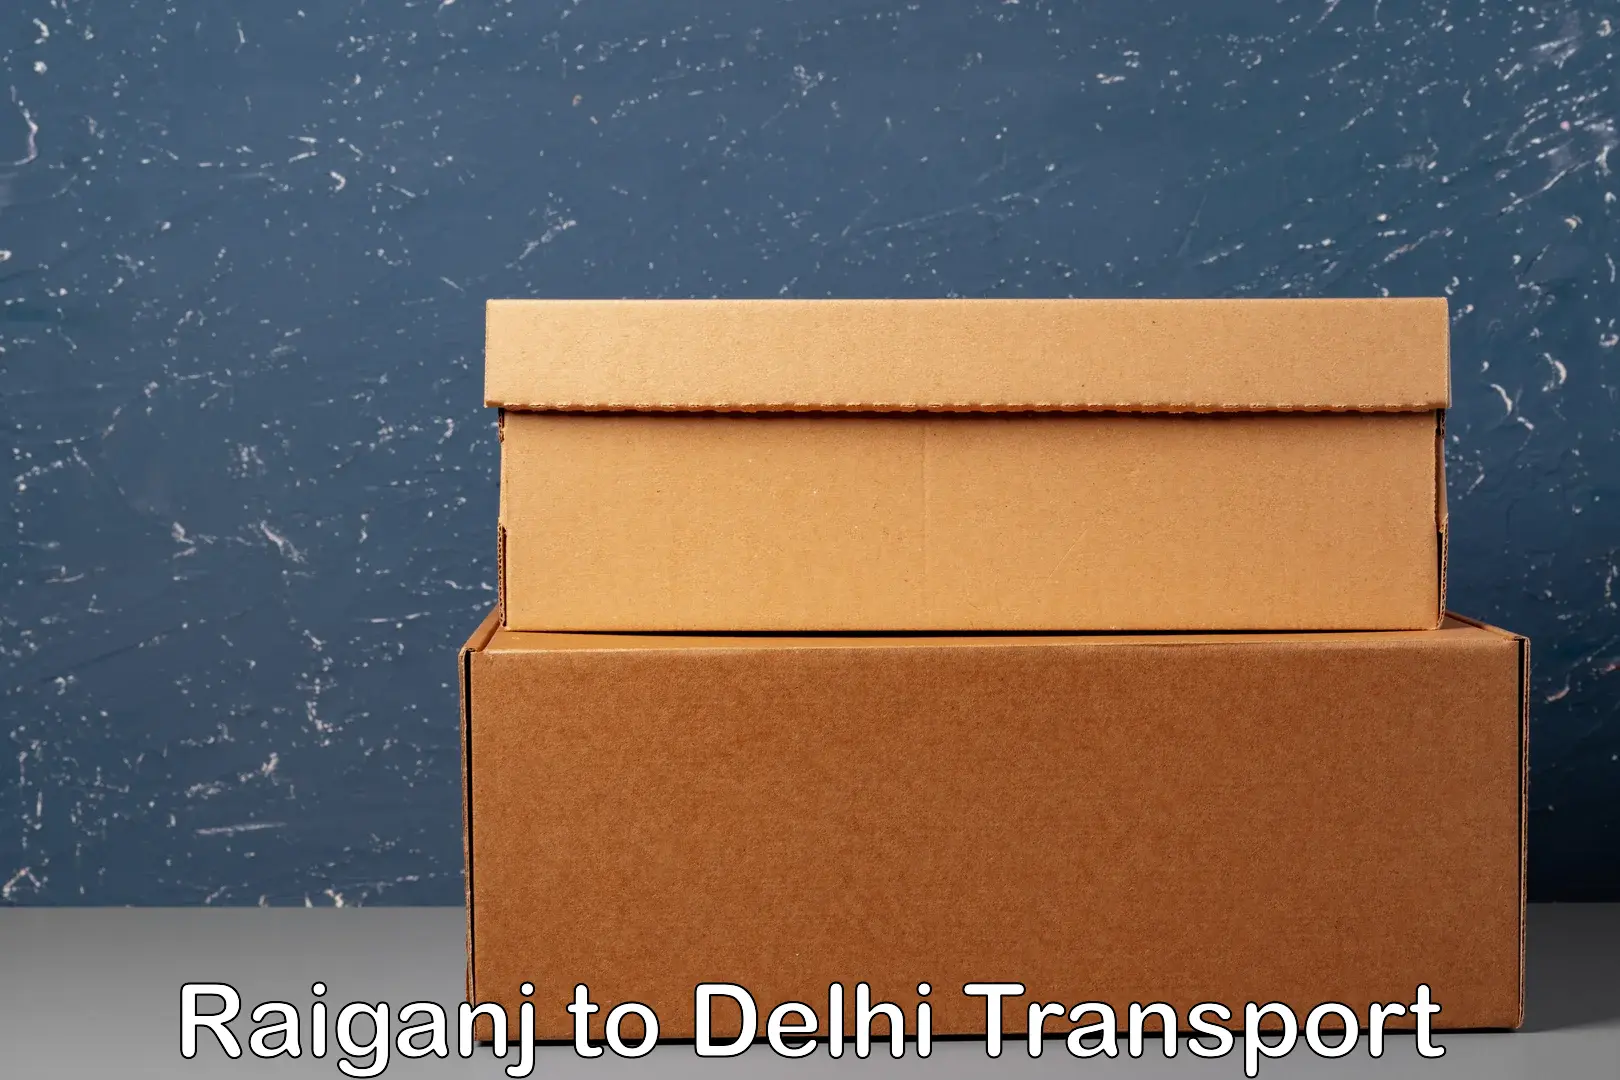 Commercial transport service Raiganj to Delhi